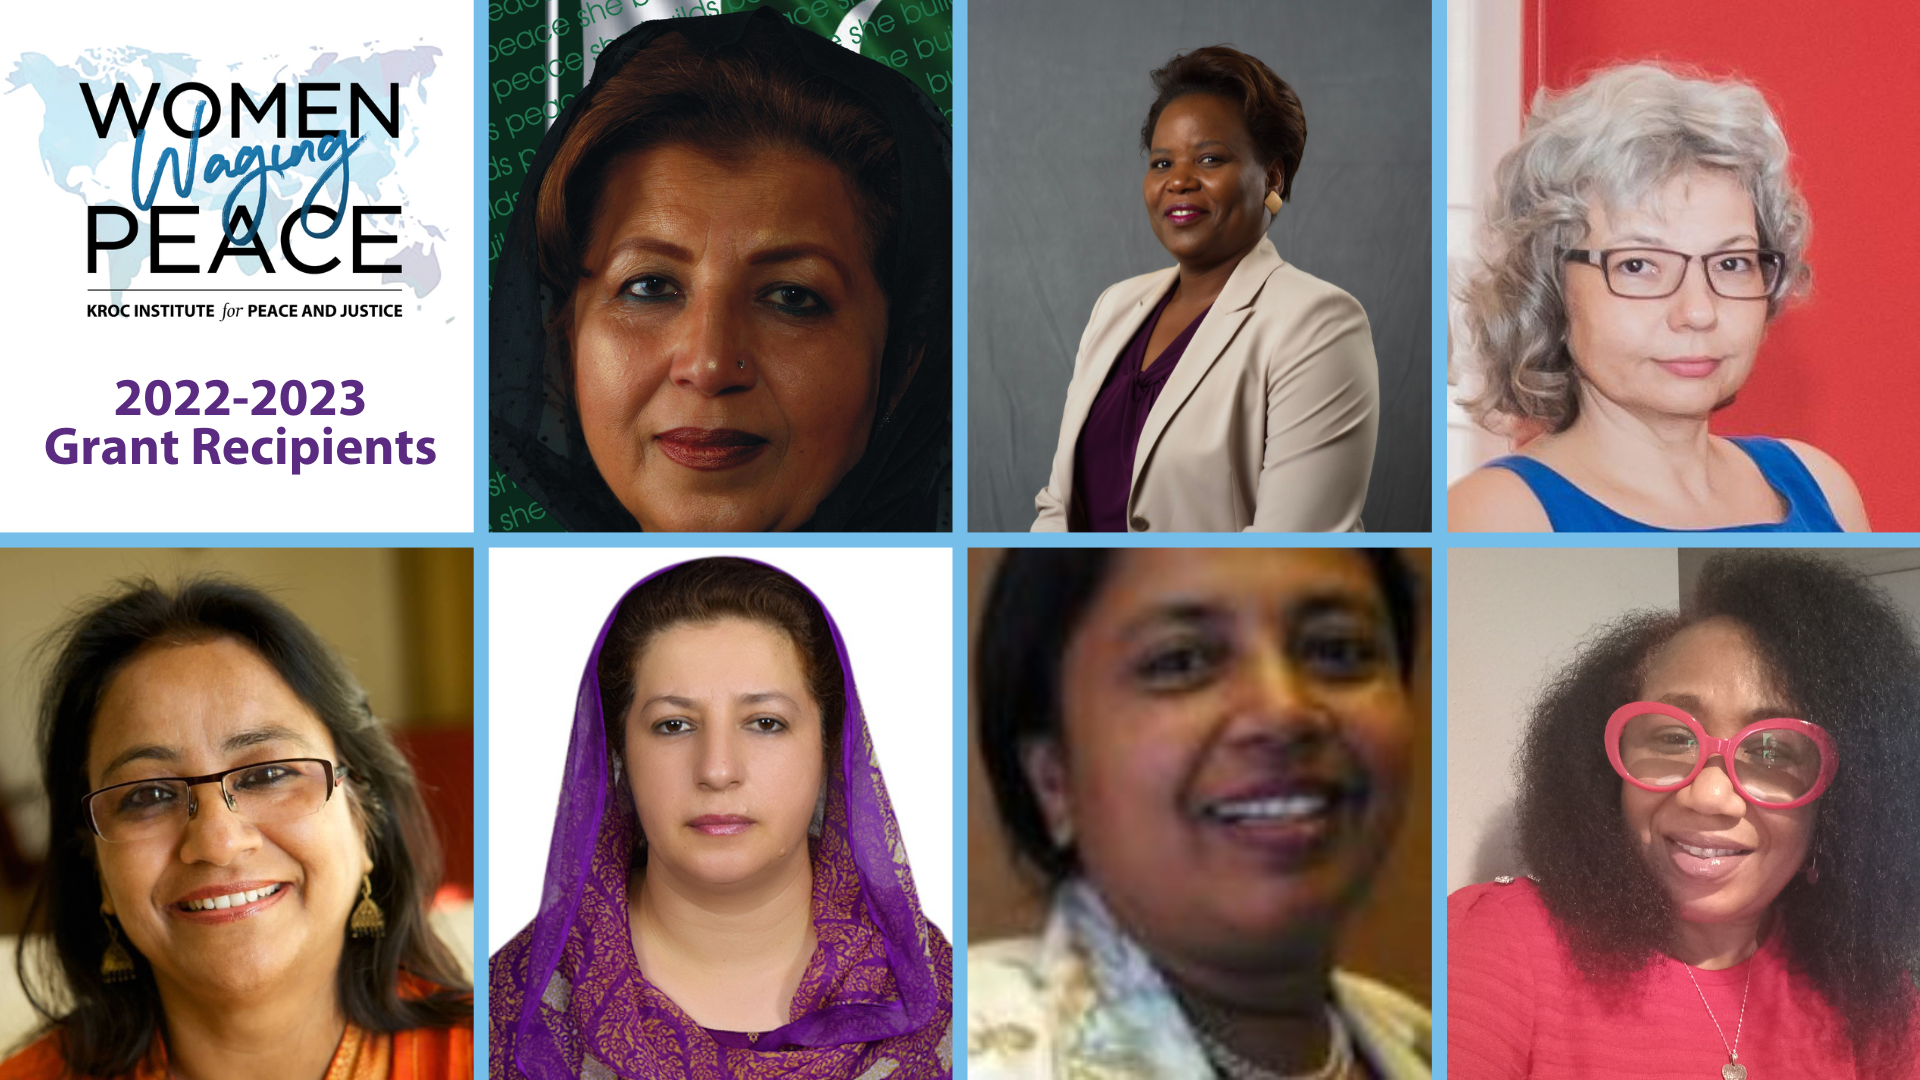 Seven Women Waging Peace Members Awarded Grants